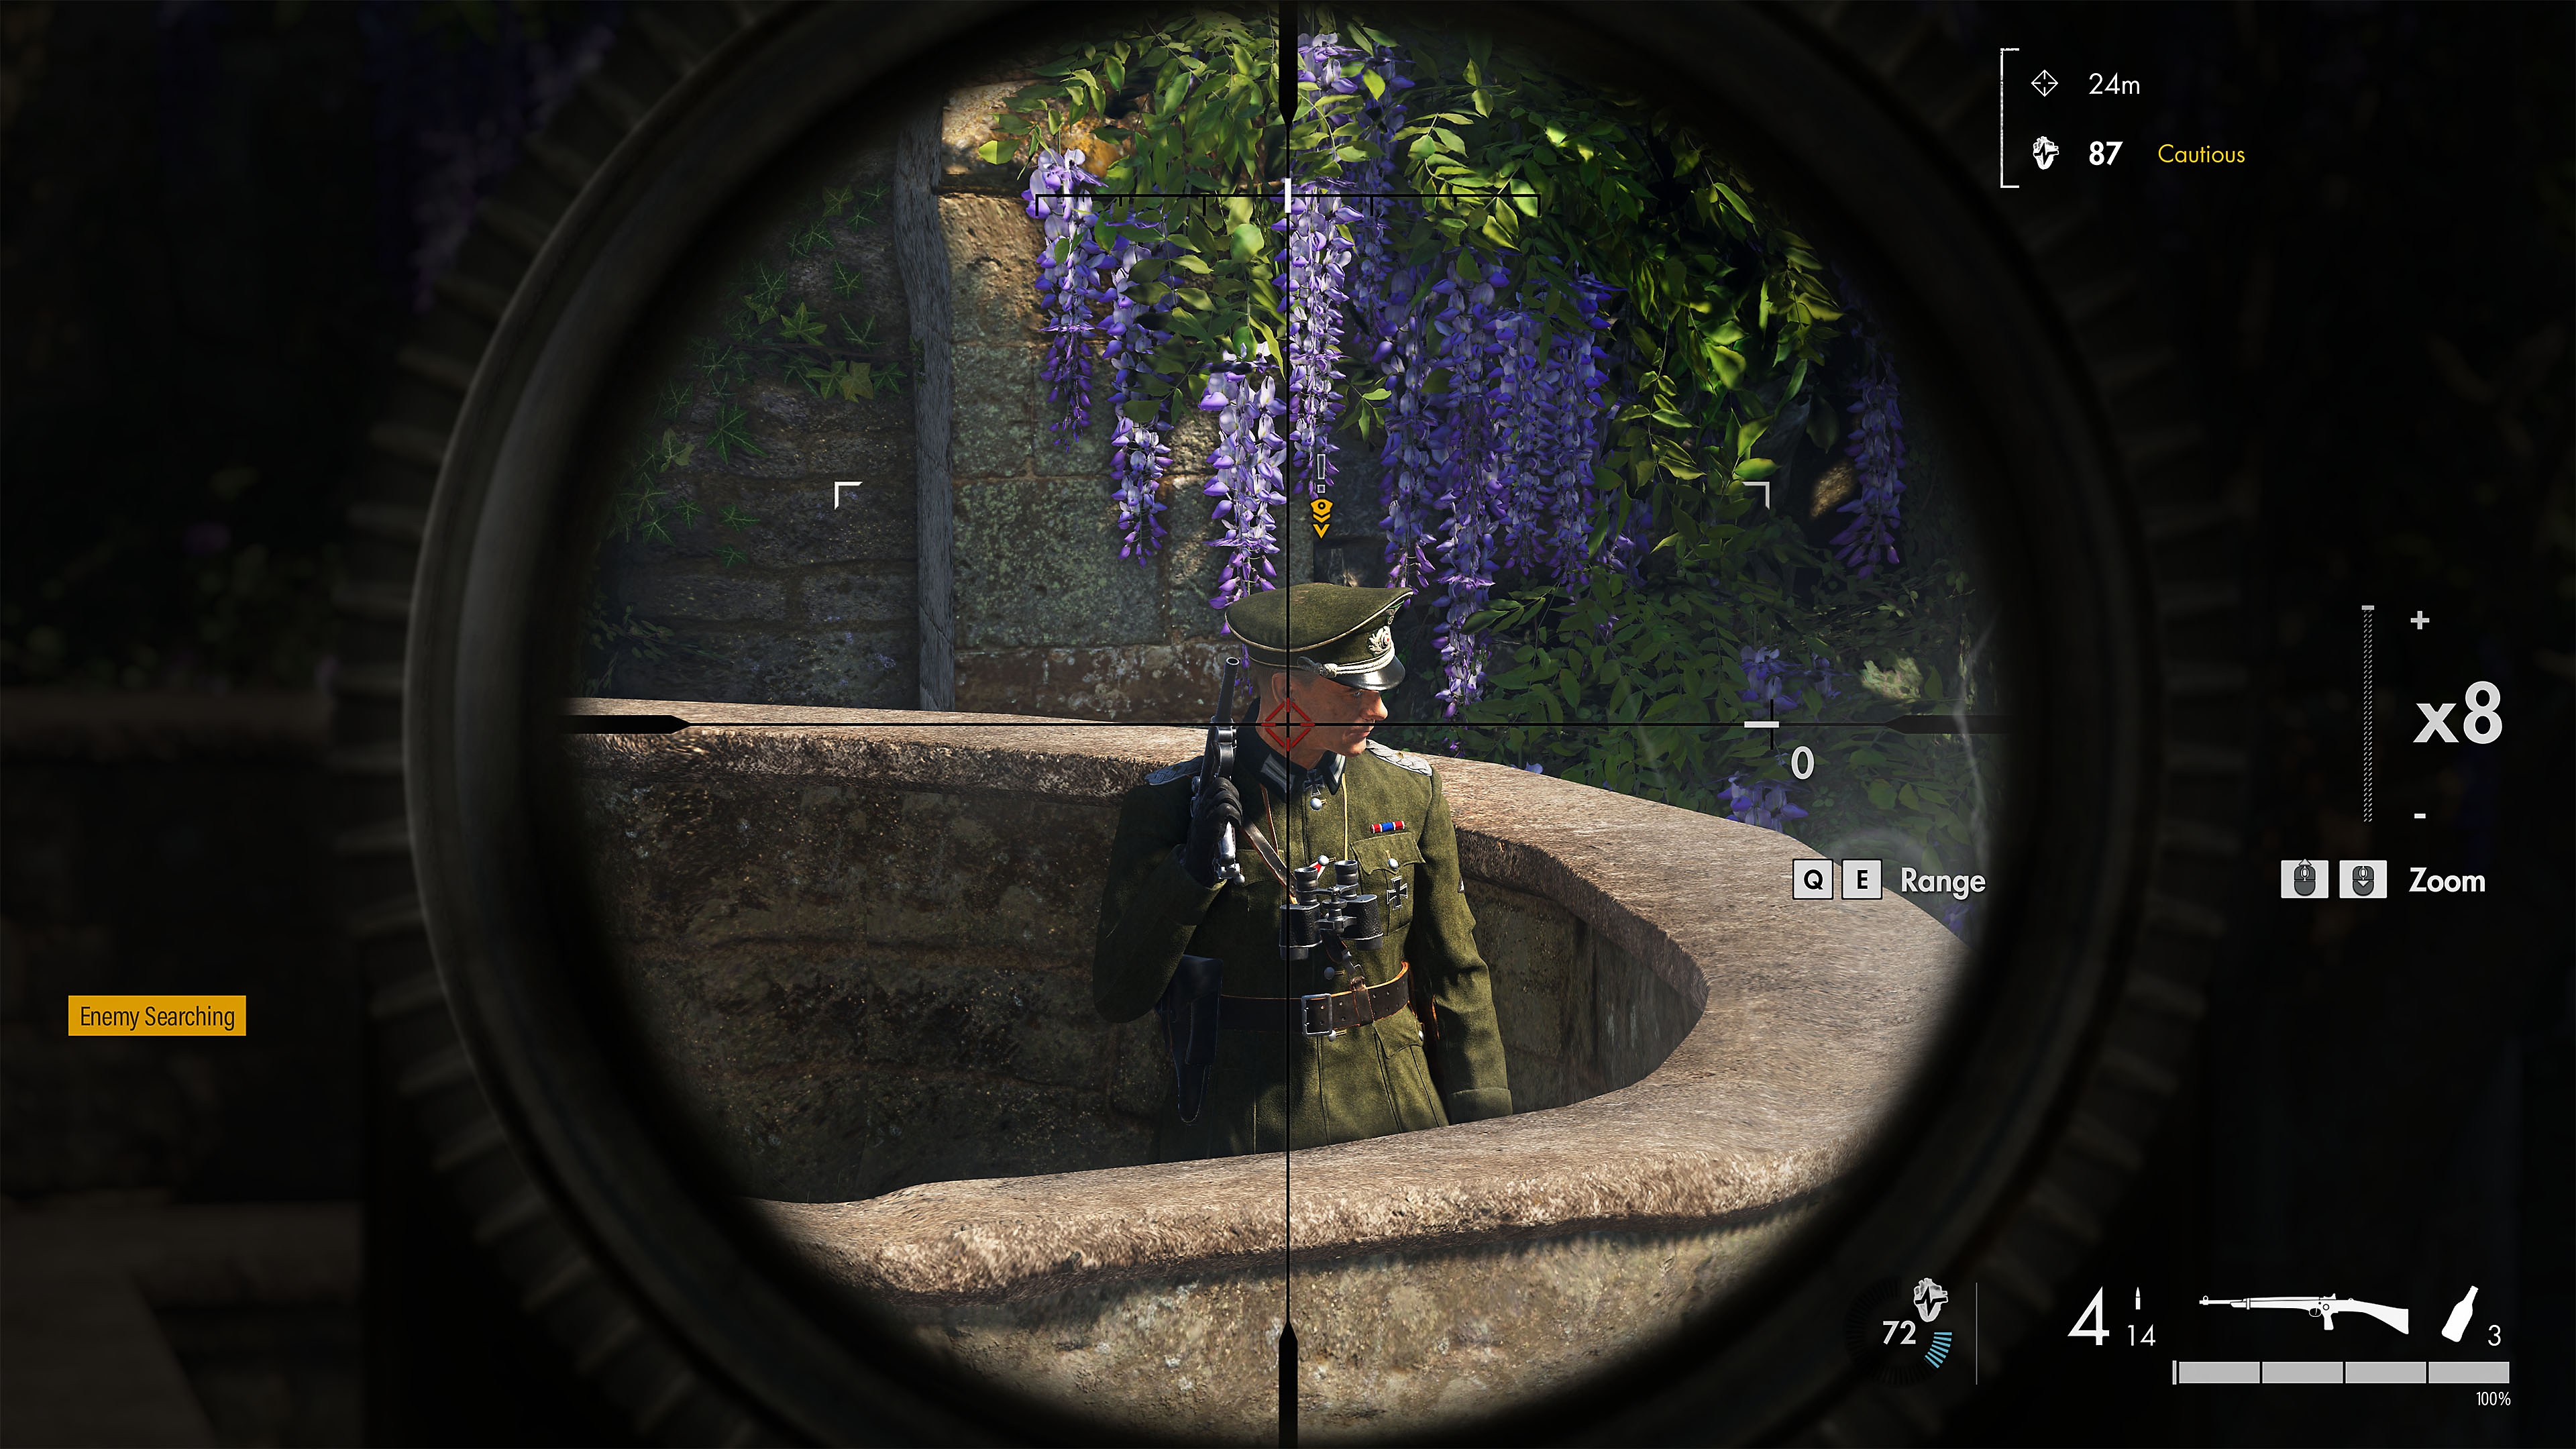 Sniper Elite 5-skærmbillede, som viser en fjende i en snigskyttes sigtekorn